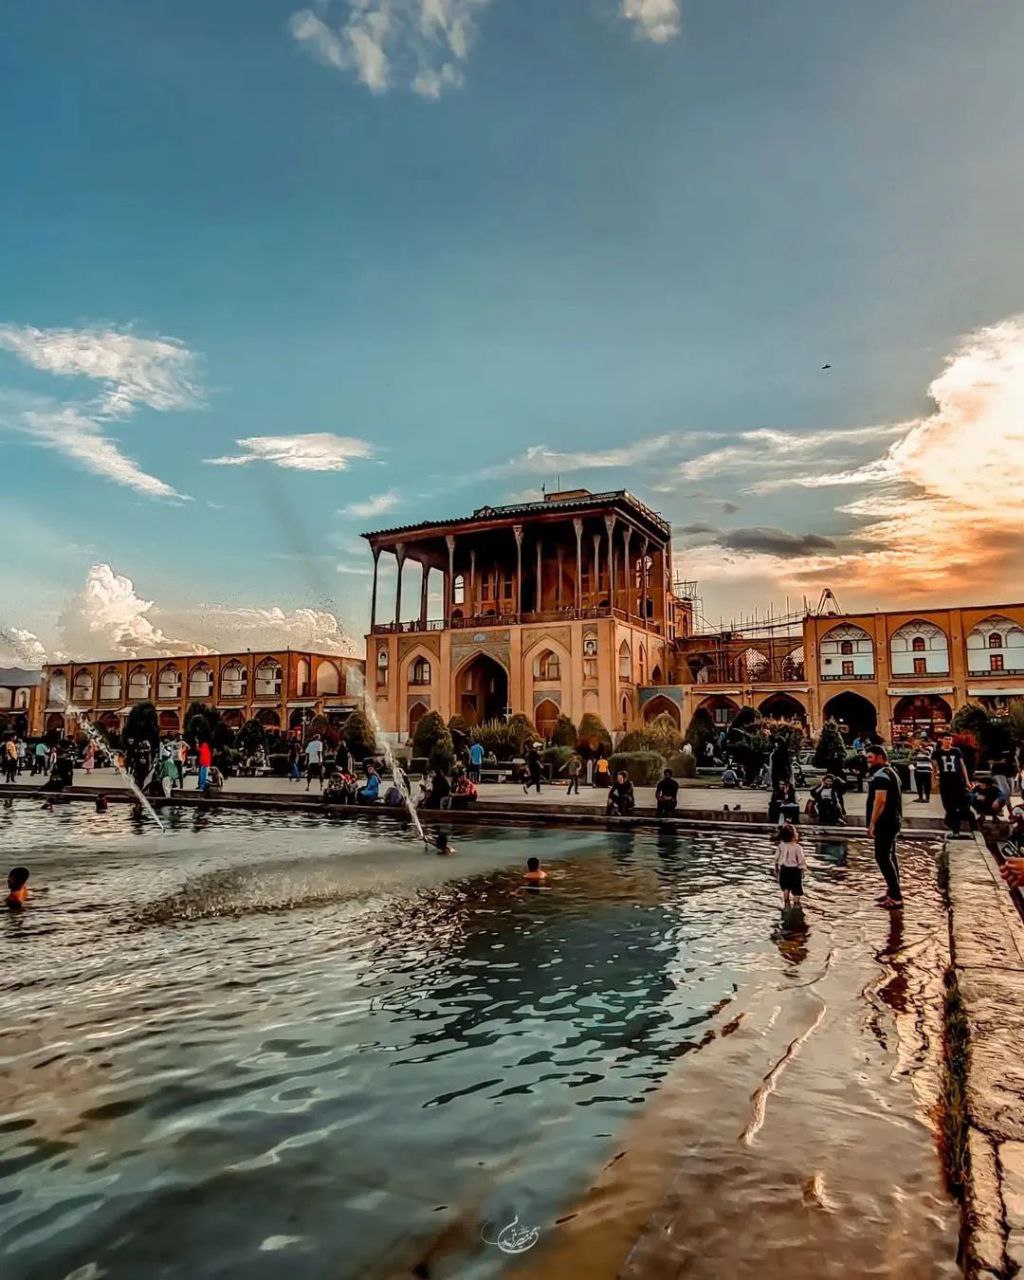 نمایی زیبا از میدان نقش جهان اصفهان + عکس